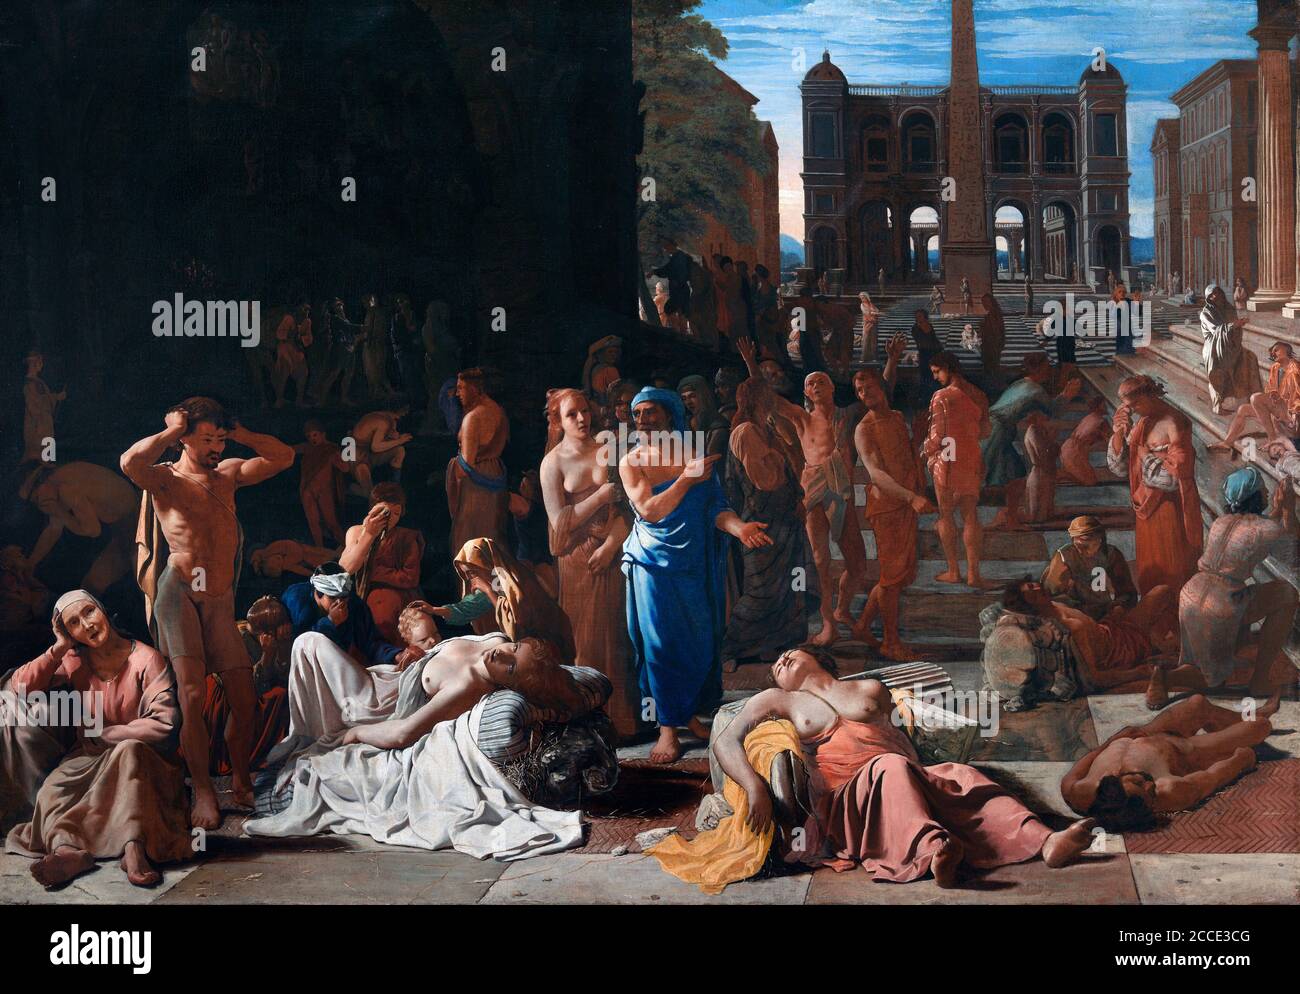 Peste in una città antica di Michael Sweerts (1618-1664), olio su tela, c.1650/52. Si ritiene che il dipinto ritrae la peste di Atene c.430 a.C. Foto Stock